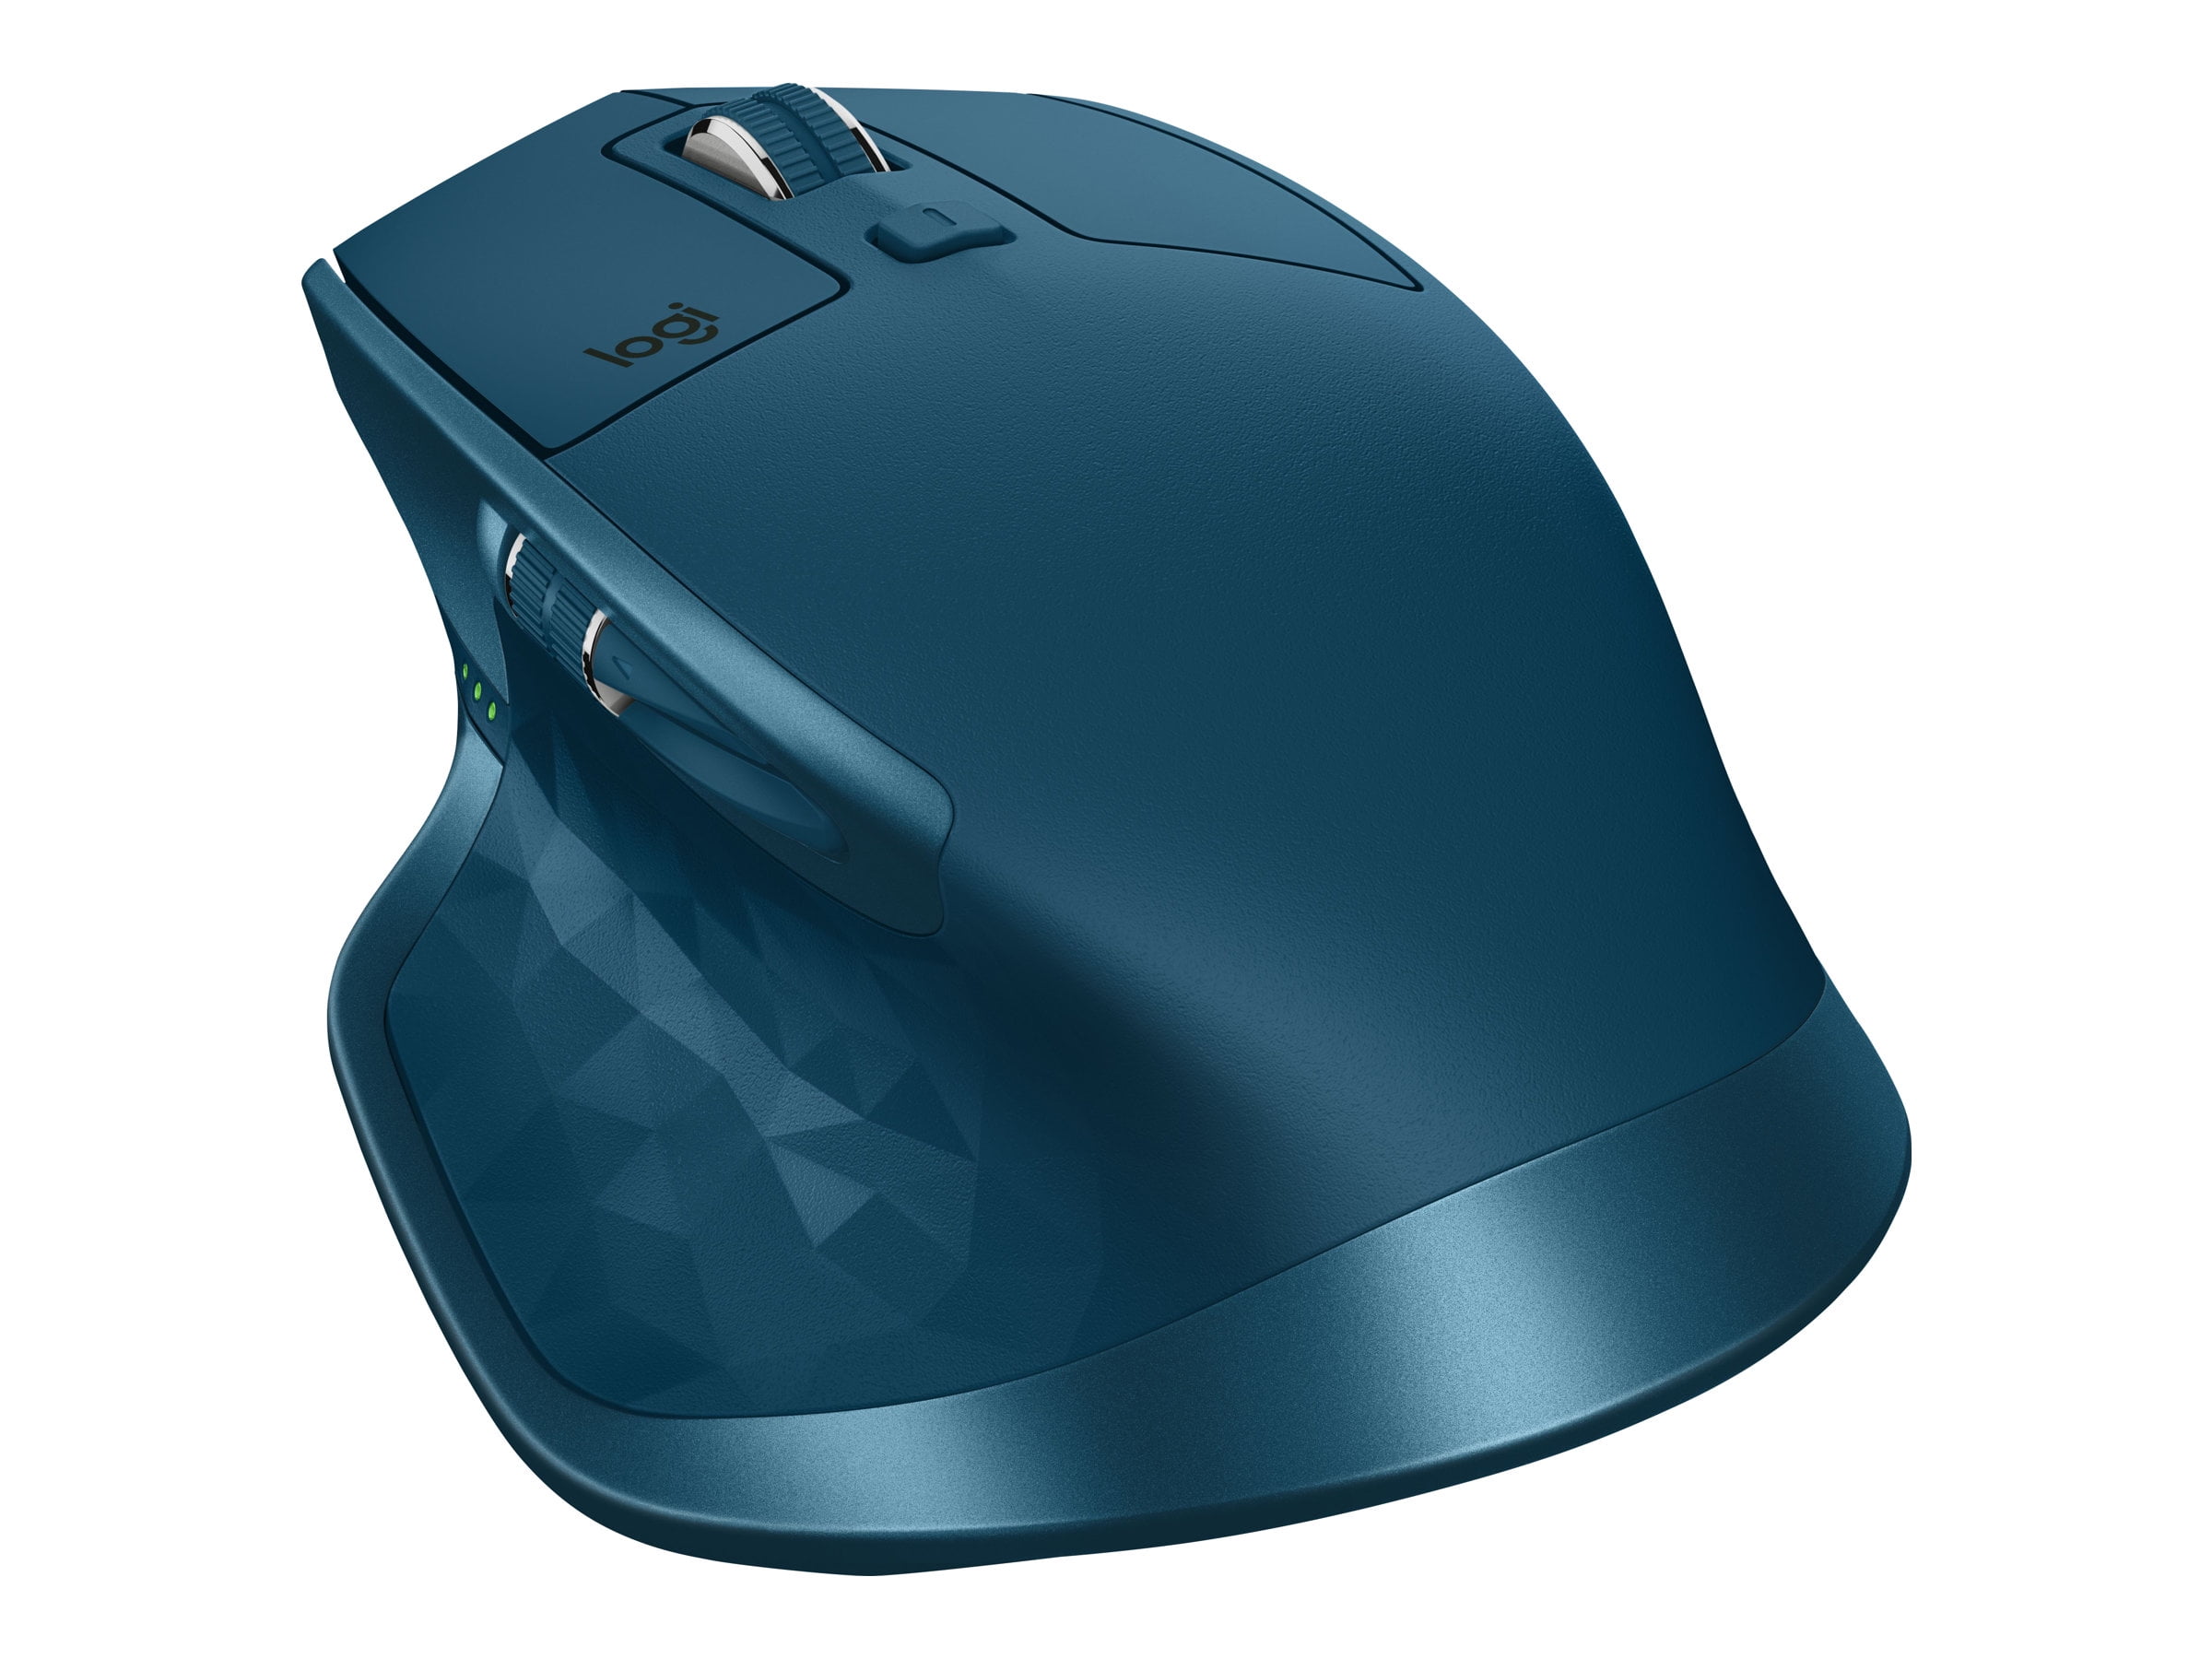 Logitech MX Master 2S - Mouse - - 7 buttons - wireless - Bluetooth, 2.4 GHz - Logitech Unifying receiver midnight teal - Walmart.com